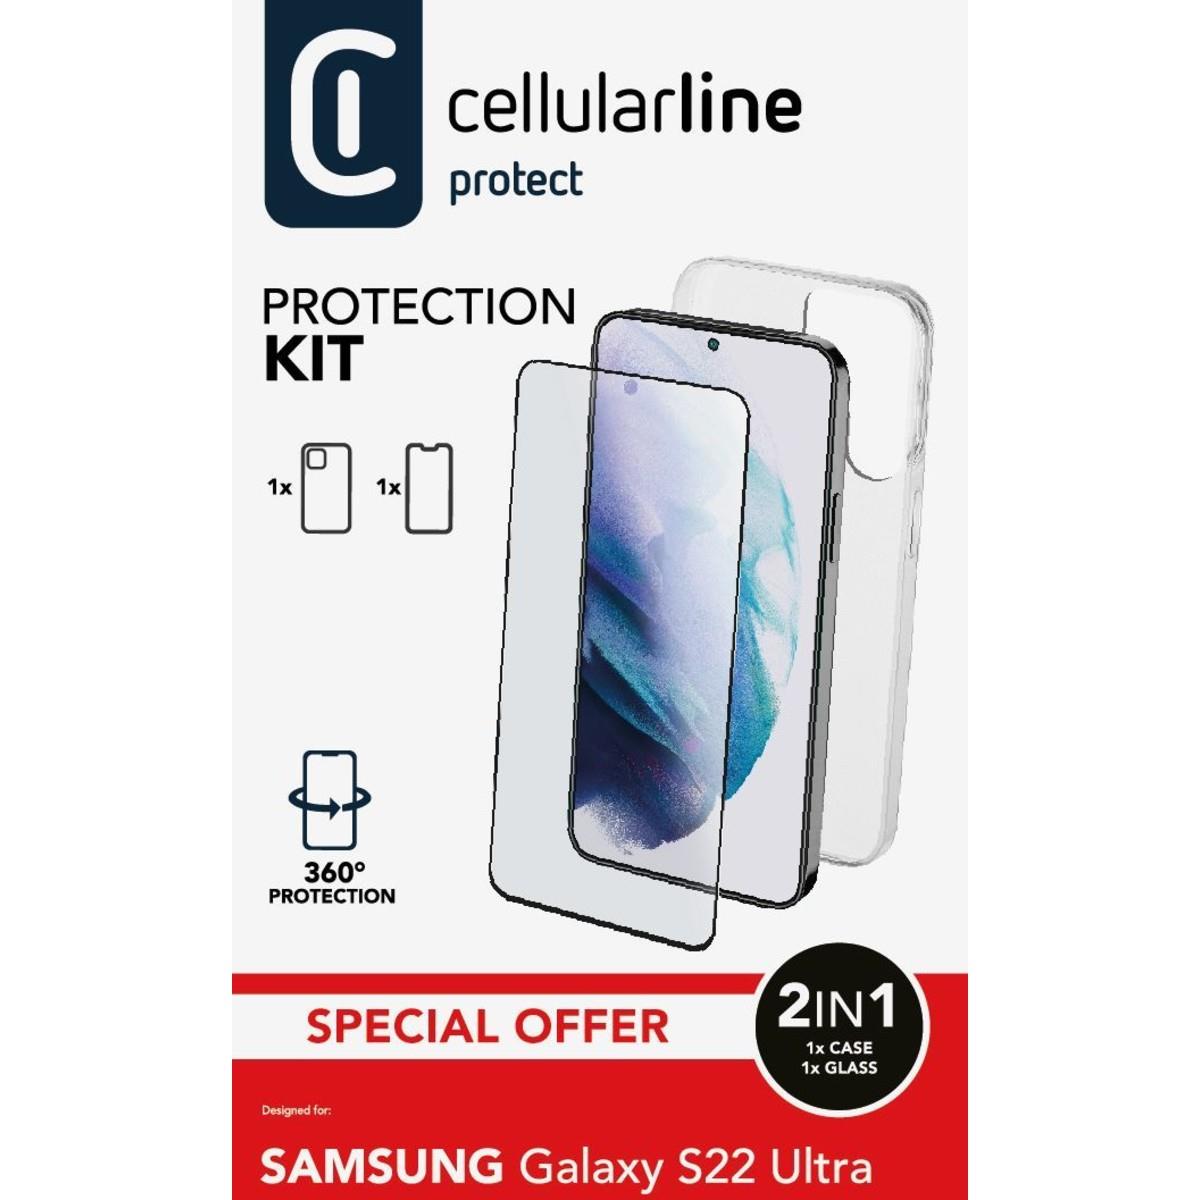 Set PROTECTION KIT aus Backcover und Schutzglas für Samsung Galaxy S22 Ultra